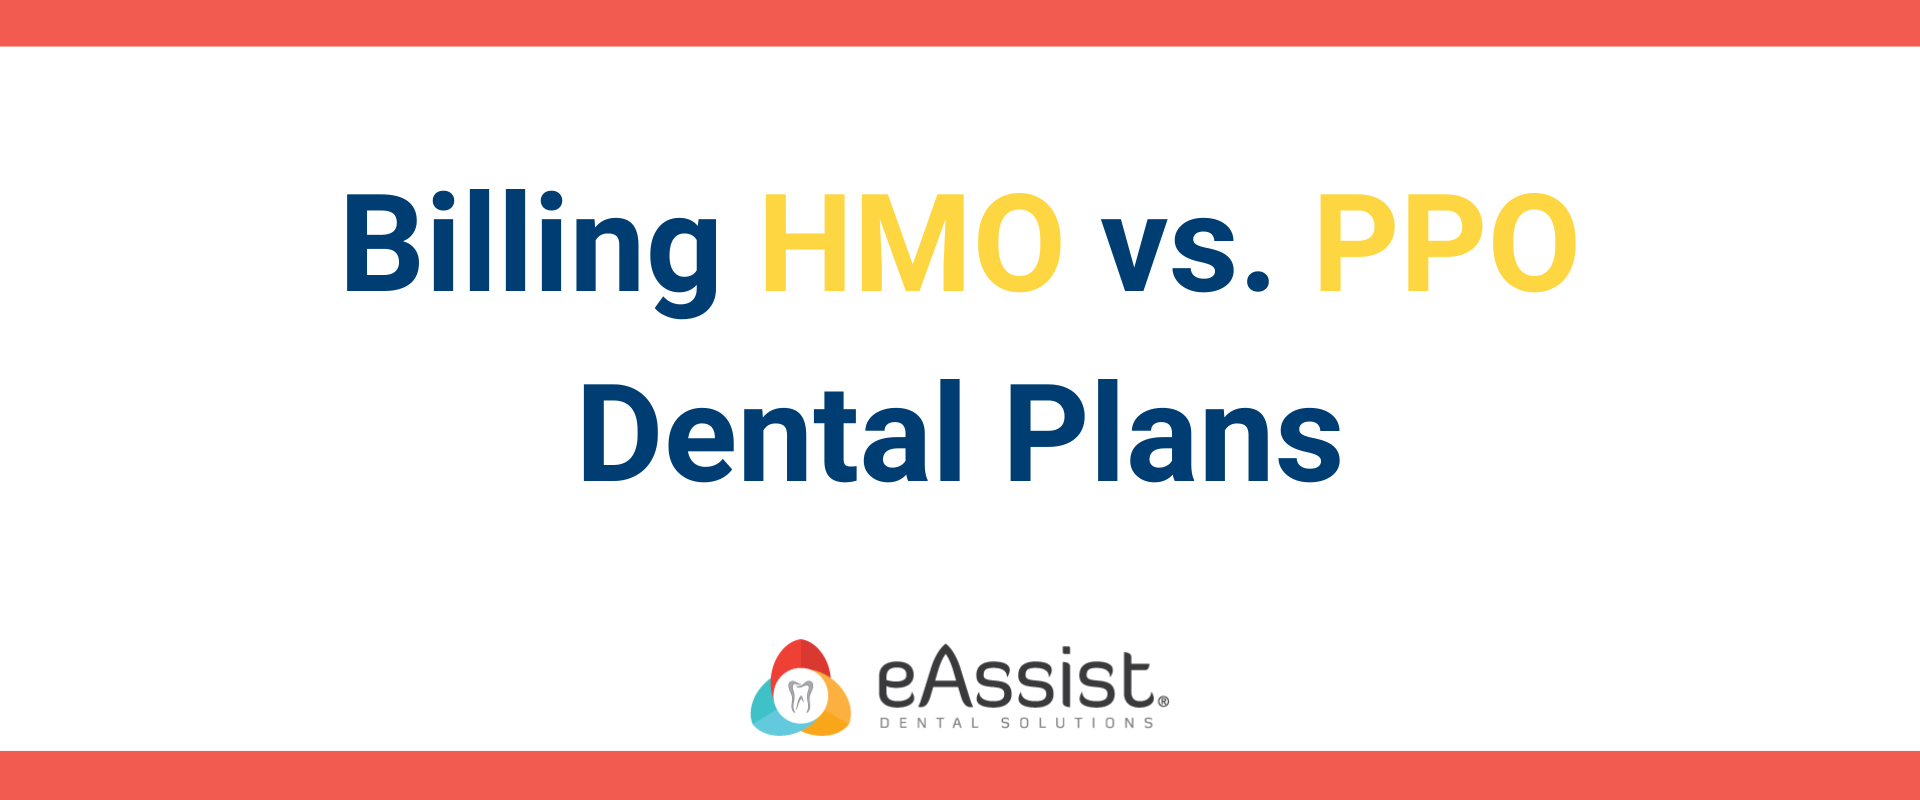 Billing HMO vs. PPO Dental Plans